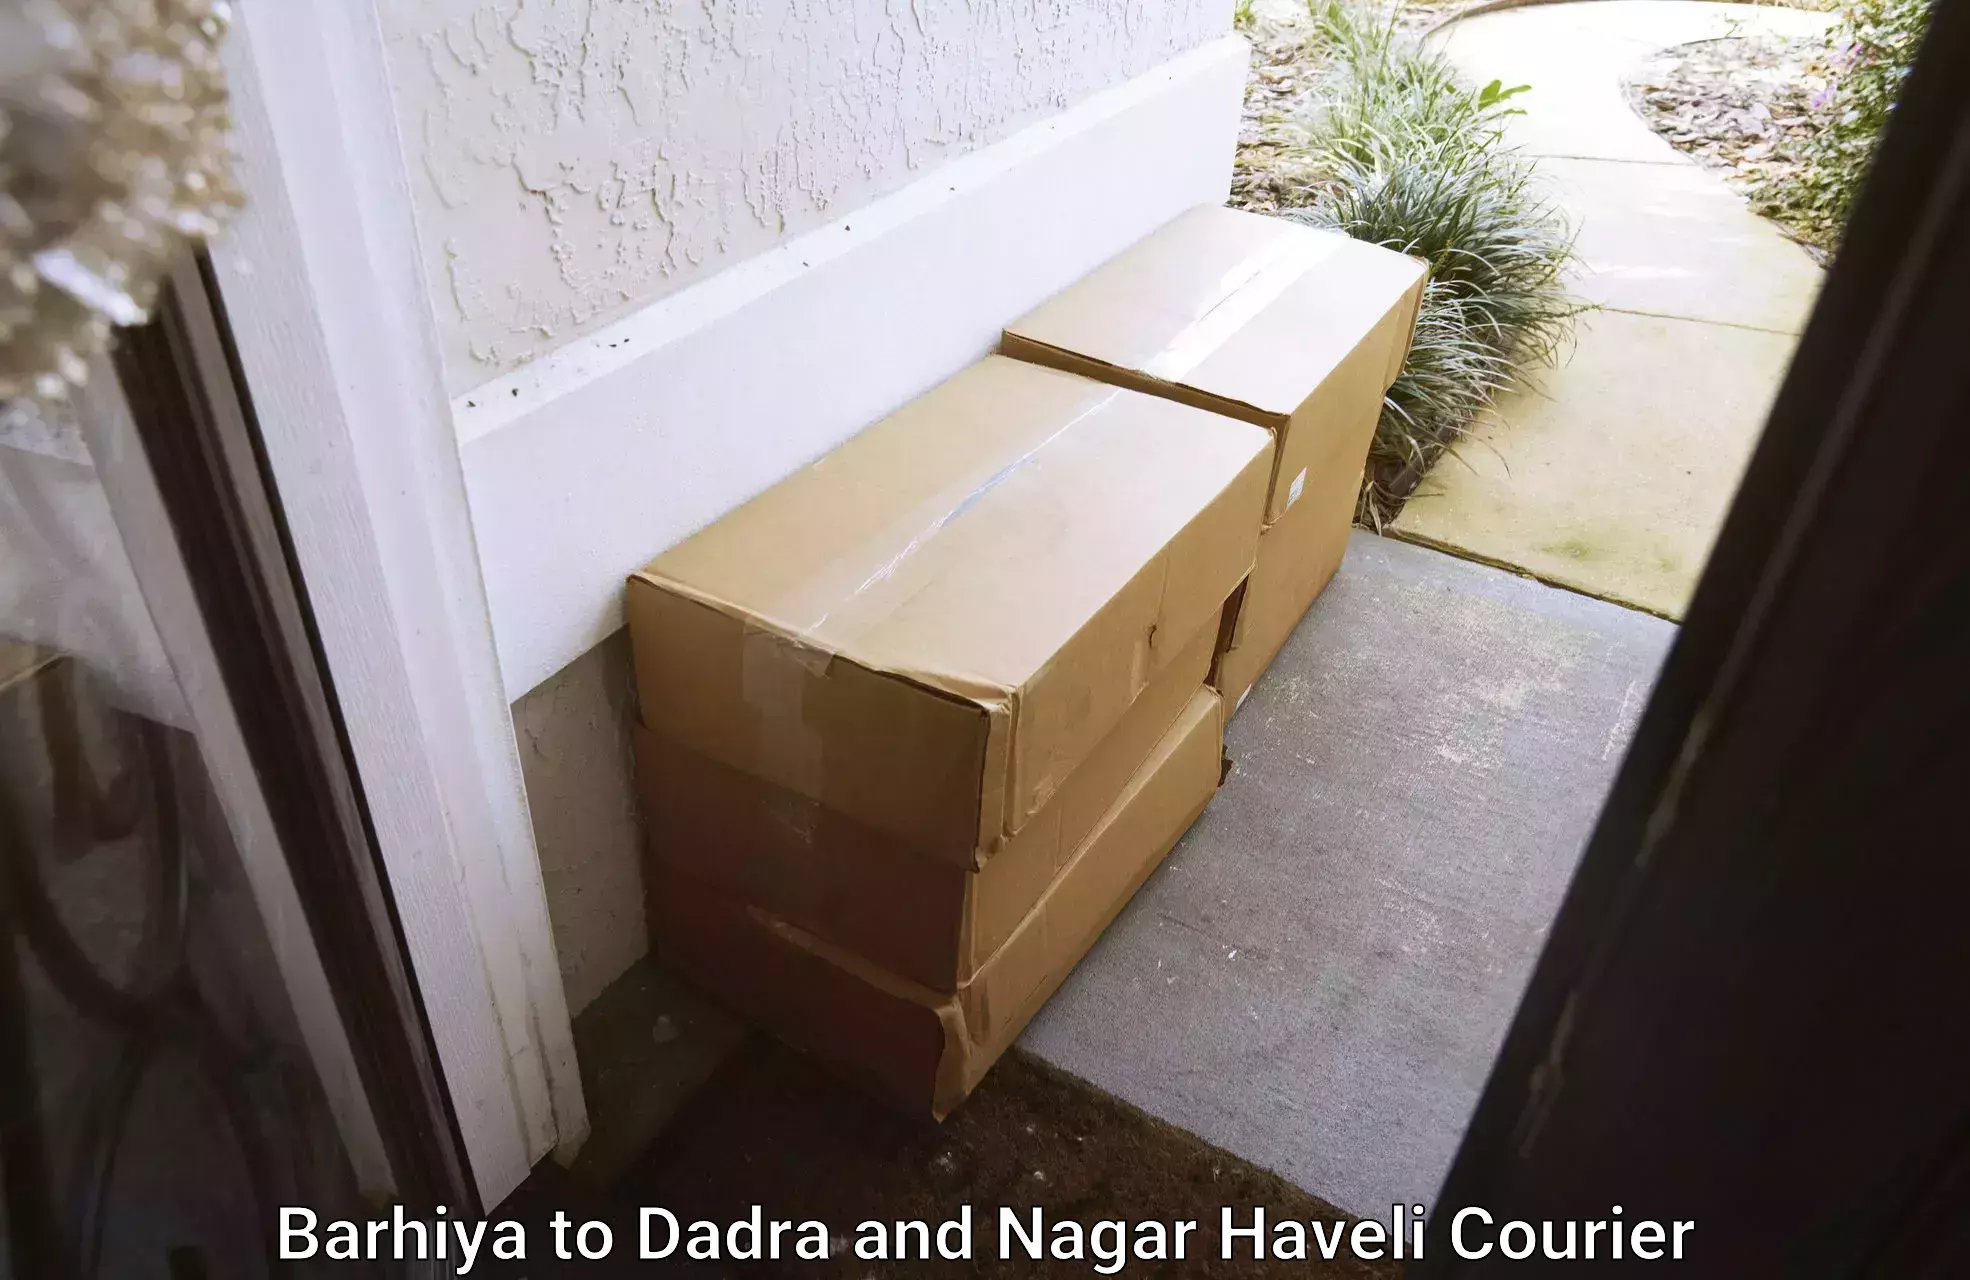 Furniture moving plans Barhiya to Dadra and Nagar Haveli